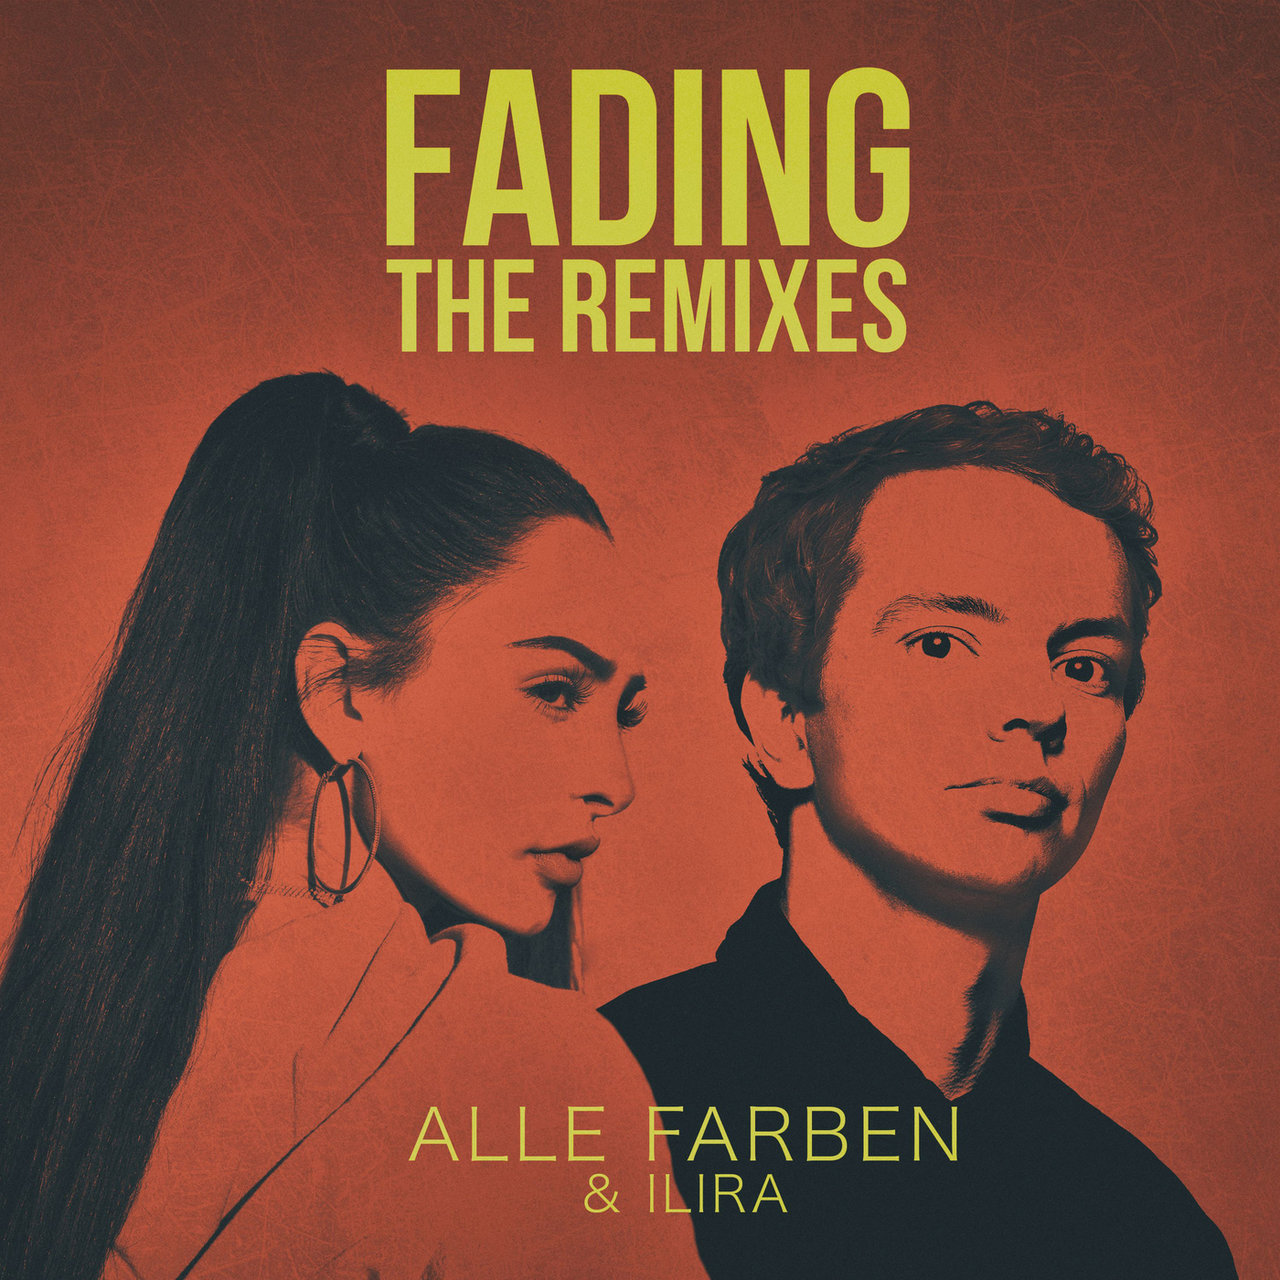 Alle Farben & ILIRA — Fading (Alle Farben Club Mix) cover artwork